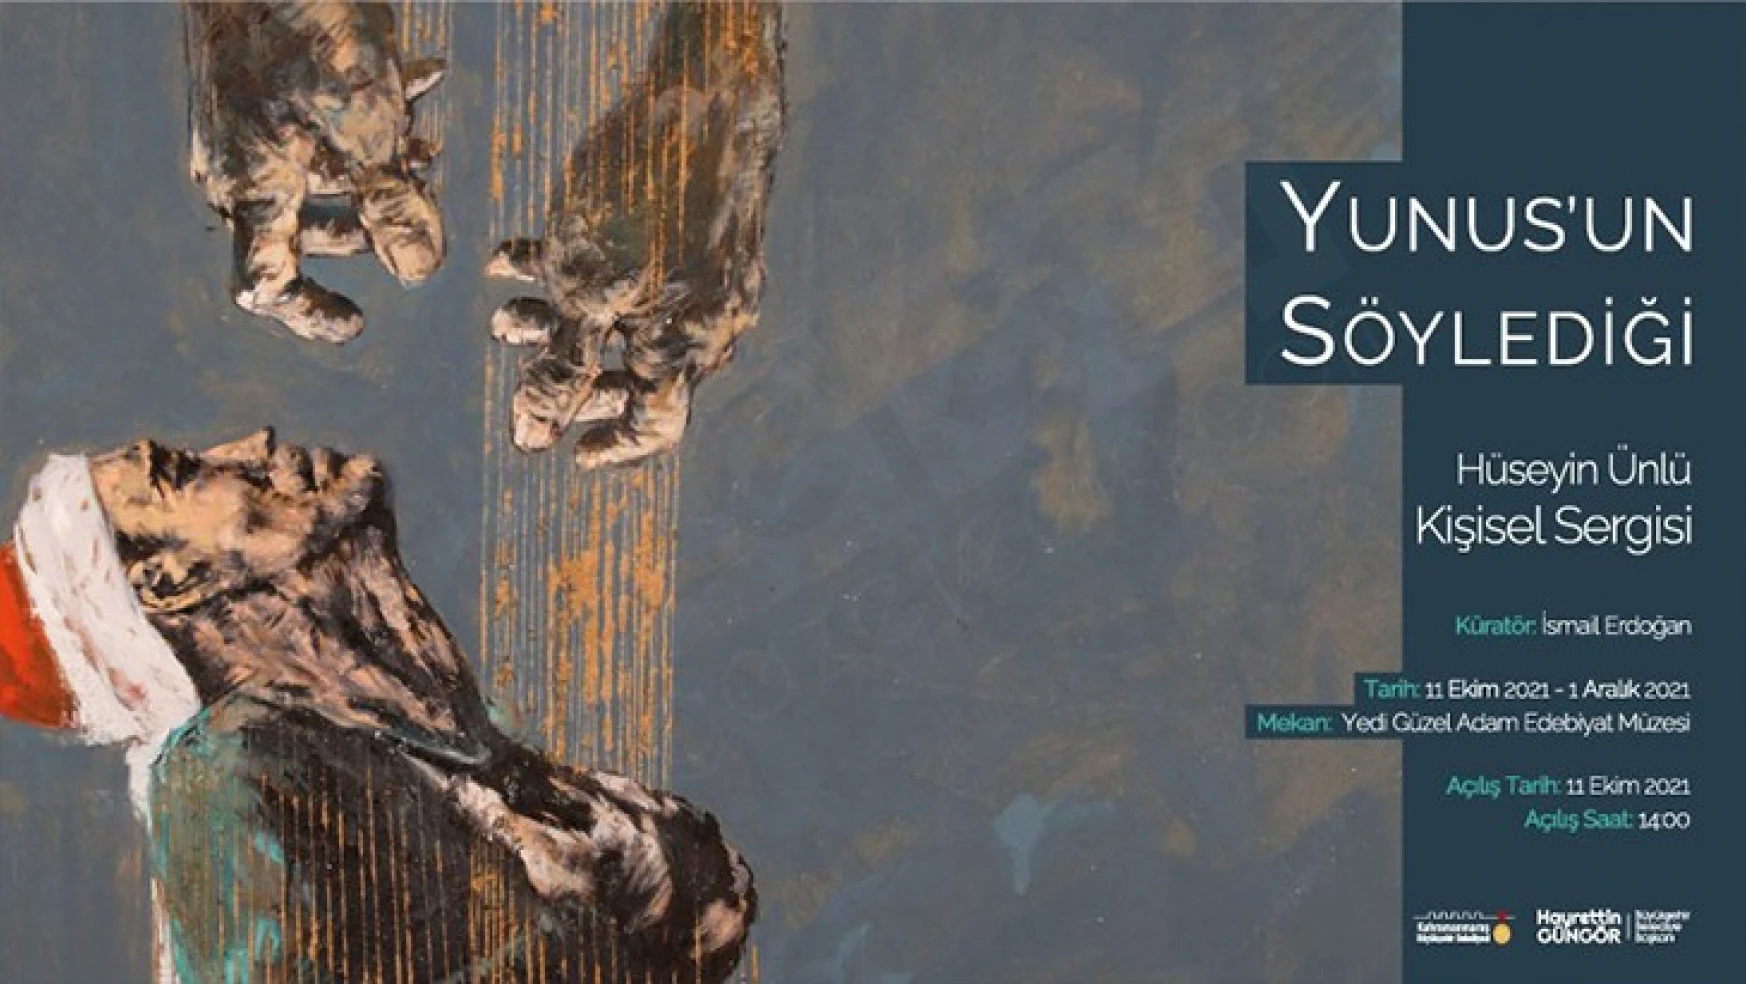 Yunus'un Söylediği resim sergisi Kahramanmaraş'ta sanatseverlerin beğenisine sunulacak